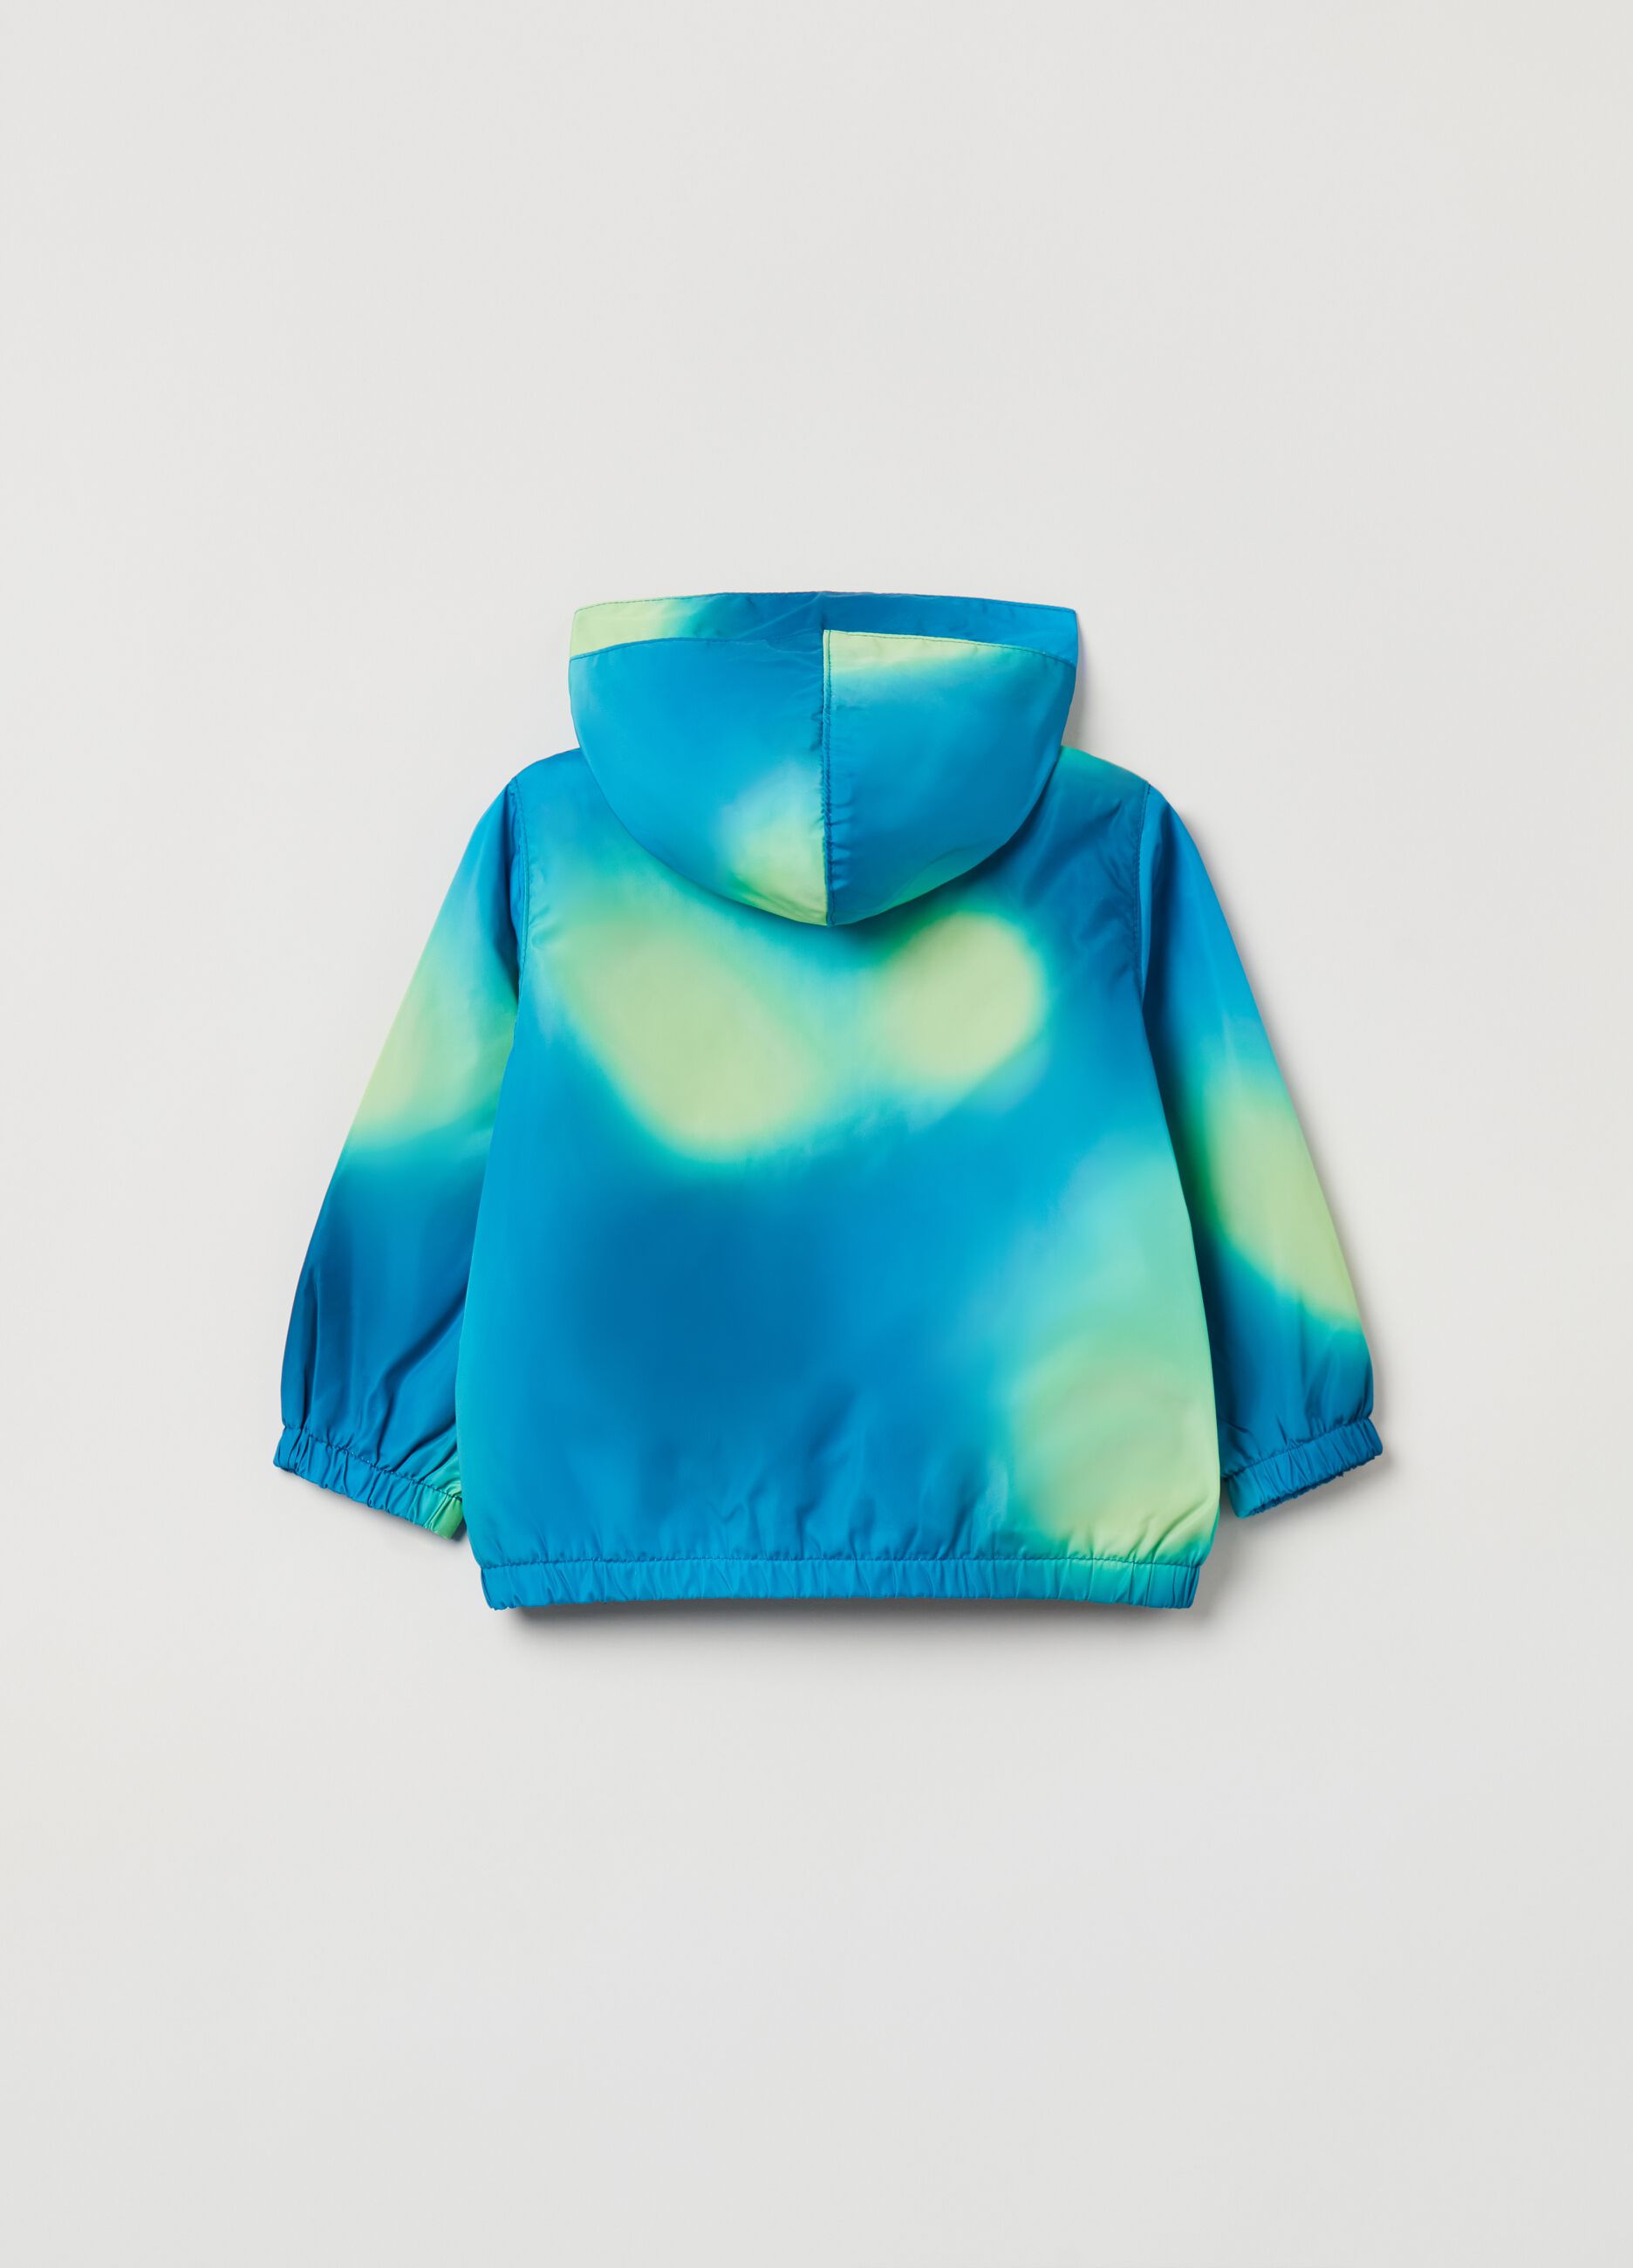 Waterproof jacket in tie dye pattern.